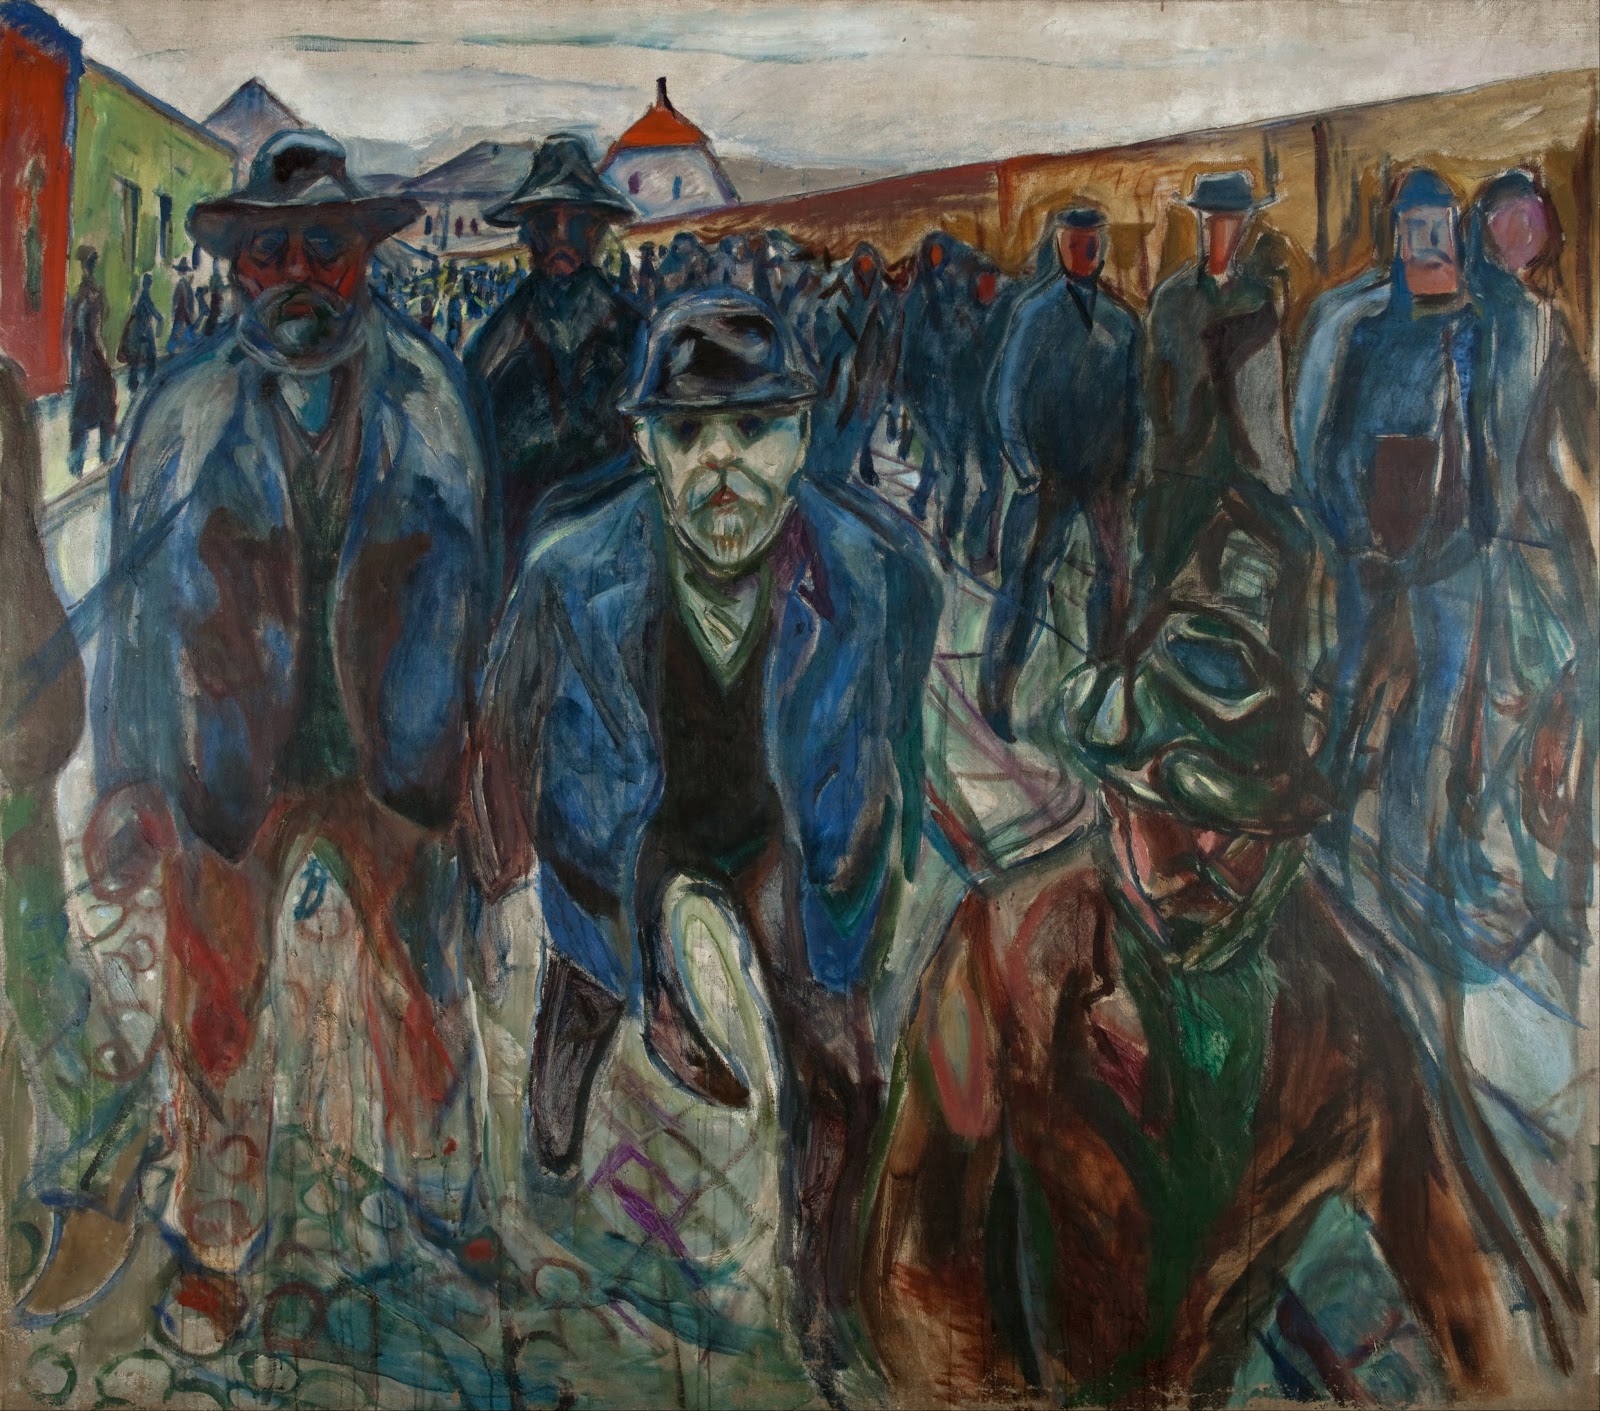 Edvard+Munch-1863-1944 (89).jpg